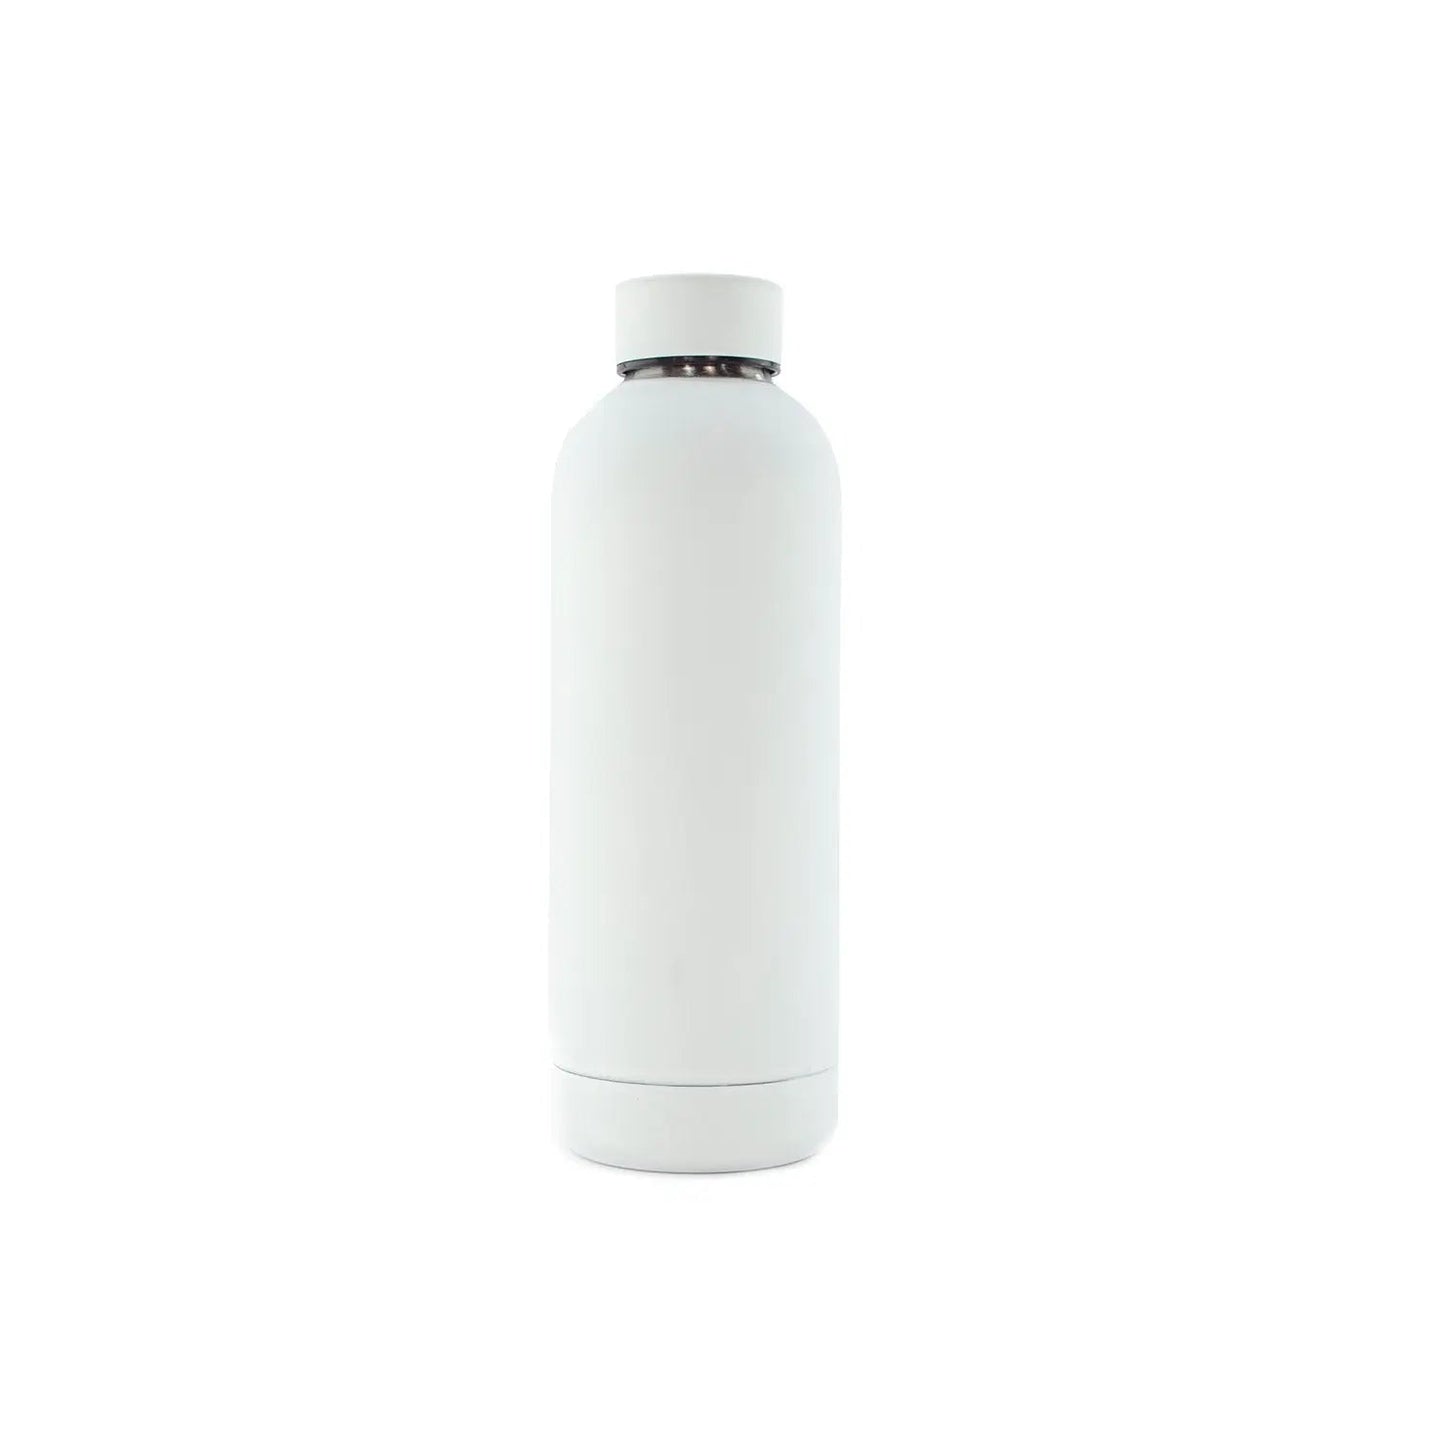 Classiq Bianco bottle - 500 ml - BeLoco